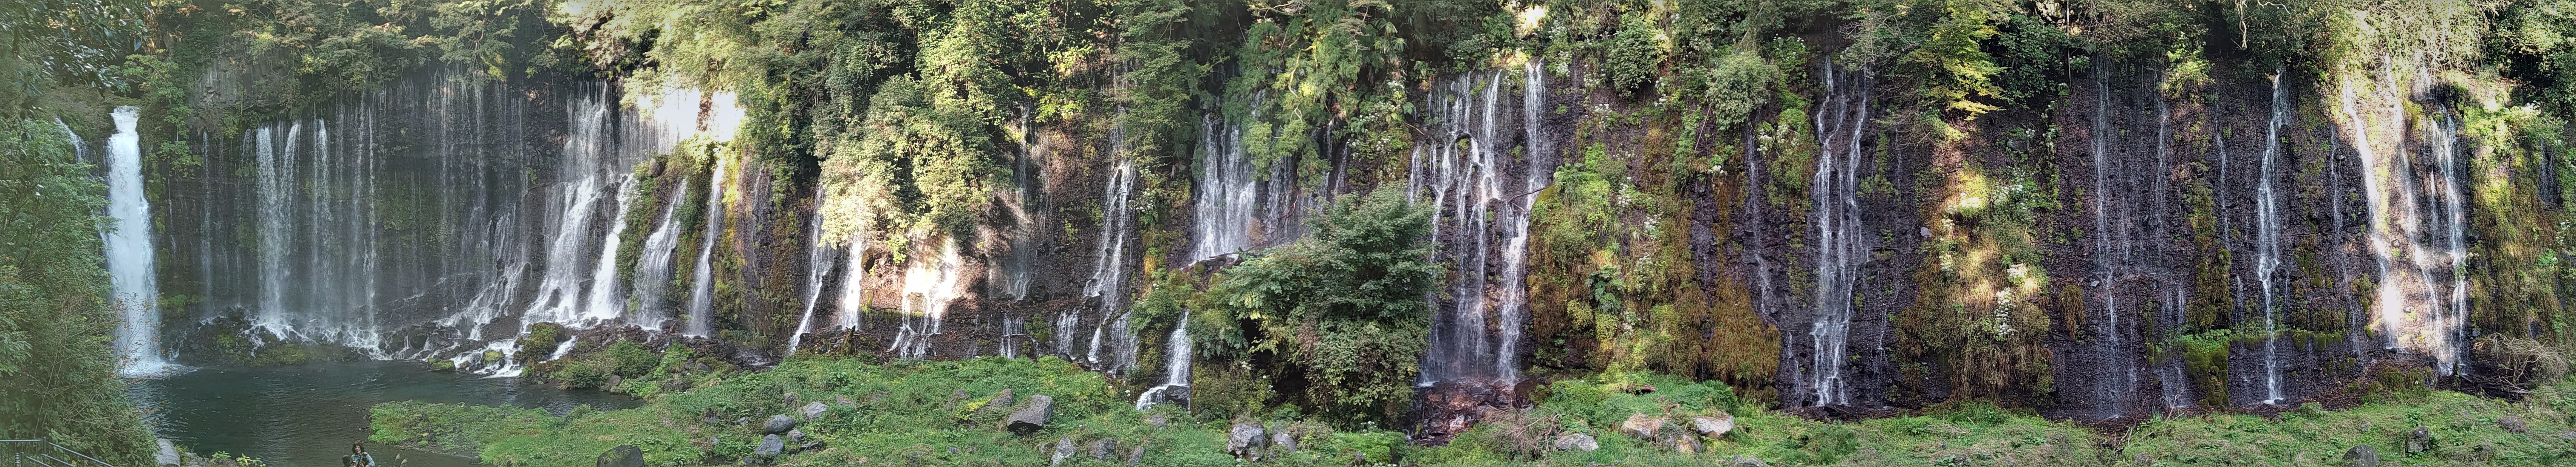 白糸の滝パノラマ撮影